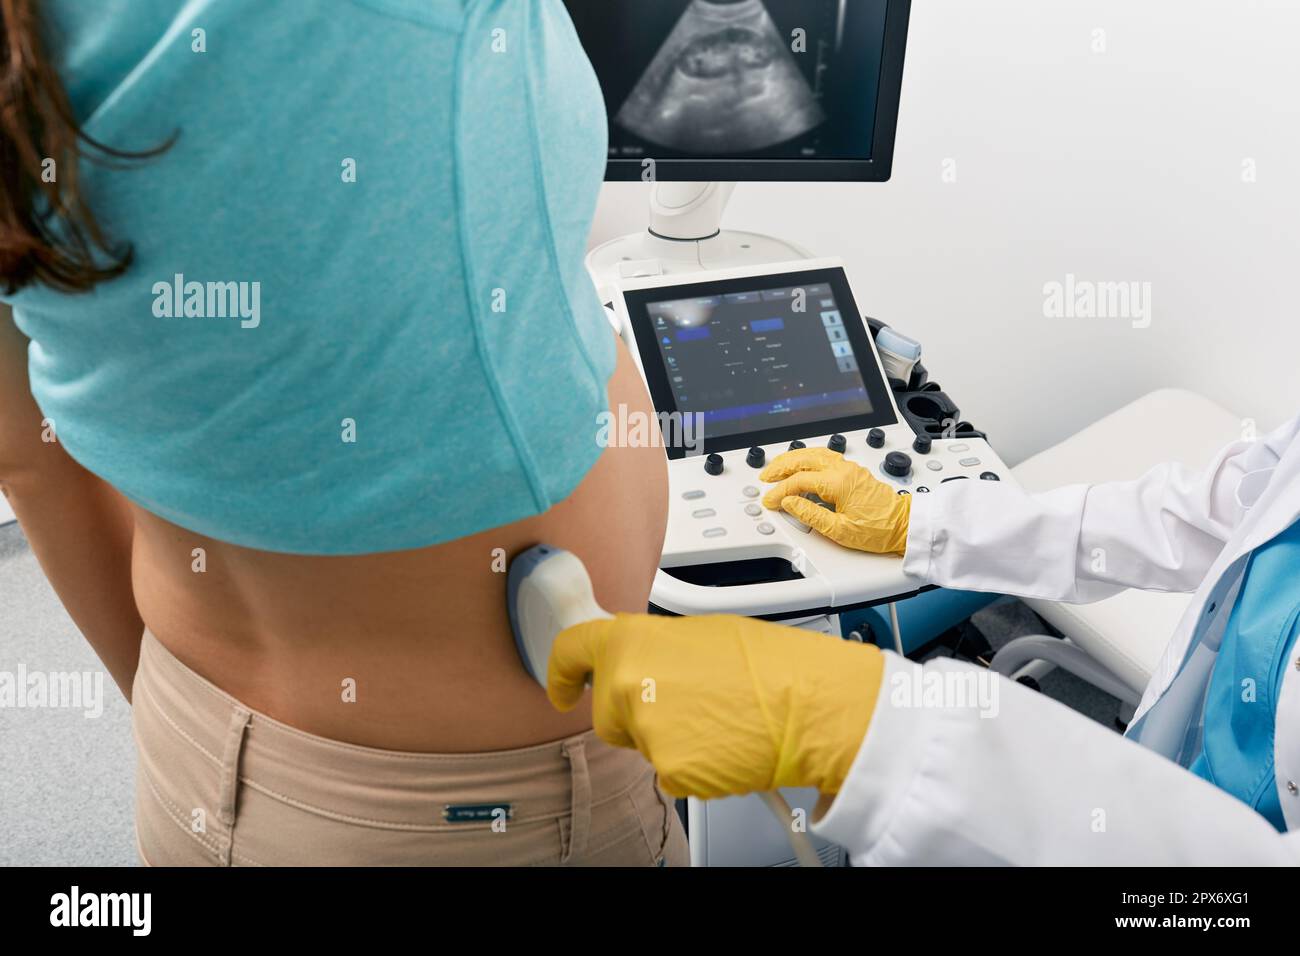 Pyélonéphrite pendant la grossesse. Examen échographique des reins pour une femme enceinte avec un spécialiste de l'échographie pendant un examen médical Banque D'Images